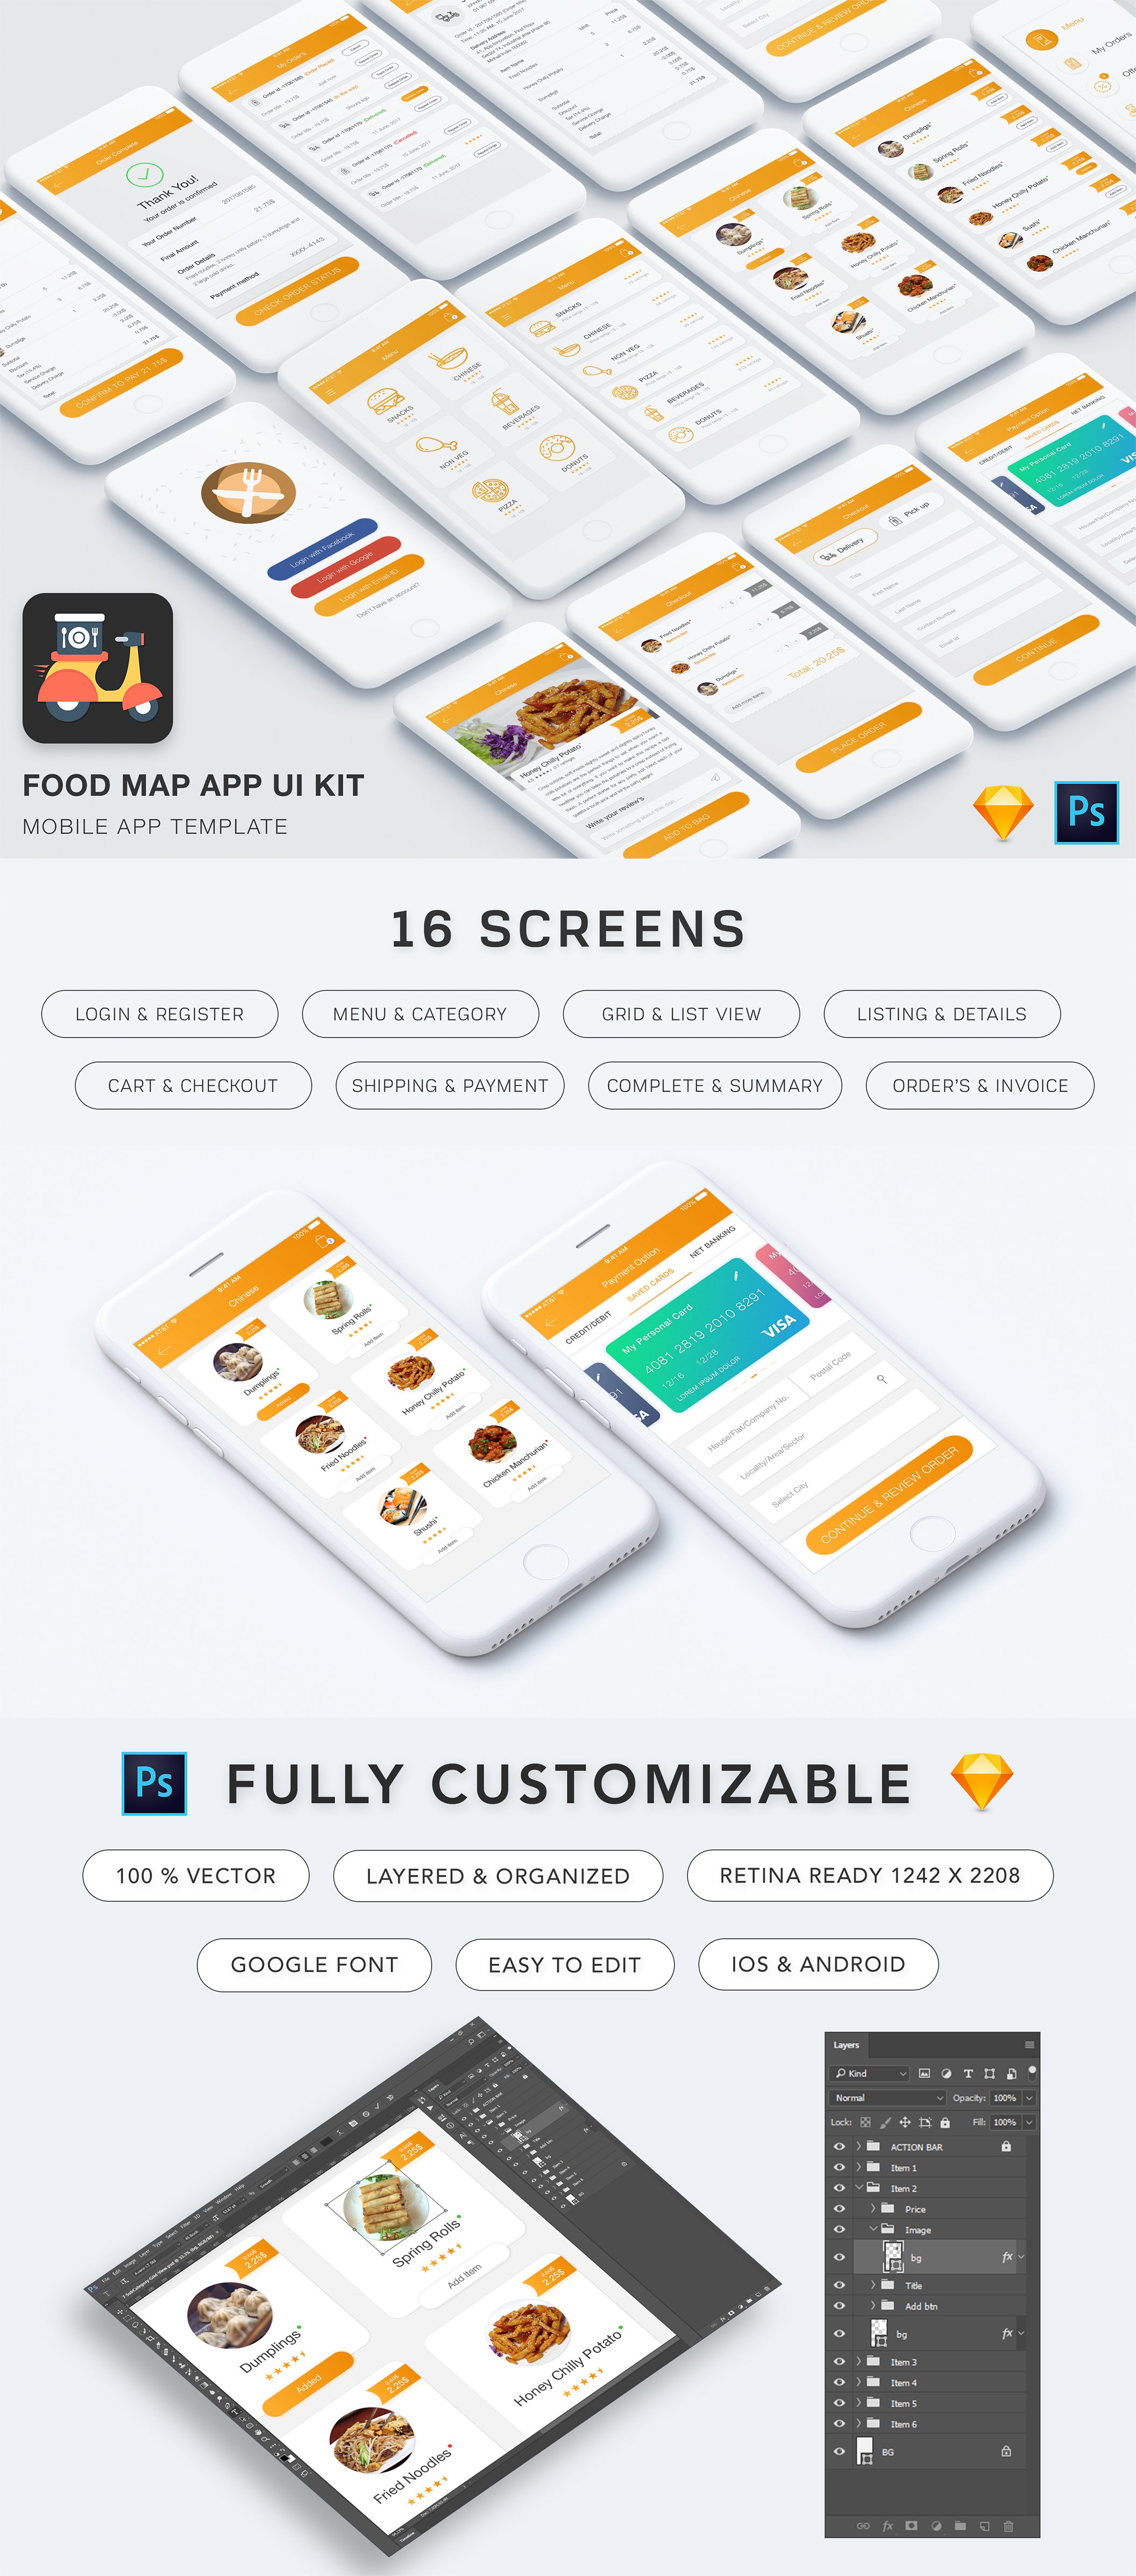 餐厅食品外卖订购手机APP UI工具包 Food Mad App UI Kit插图